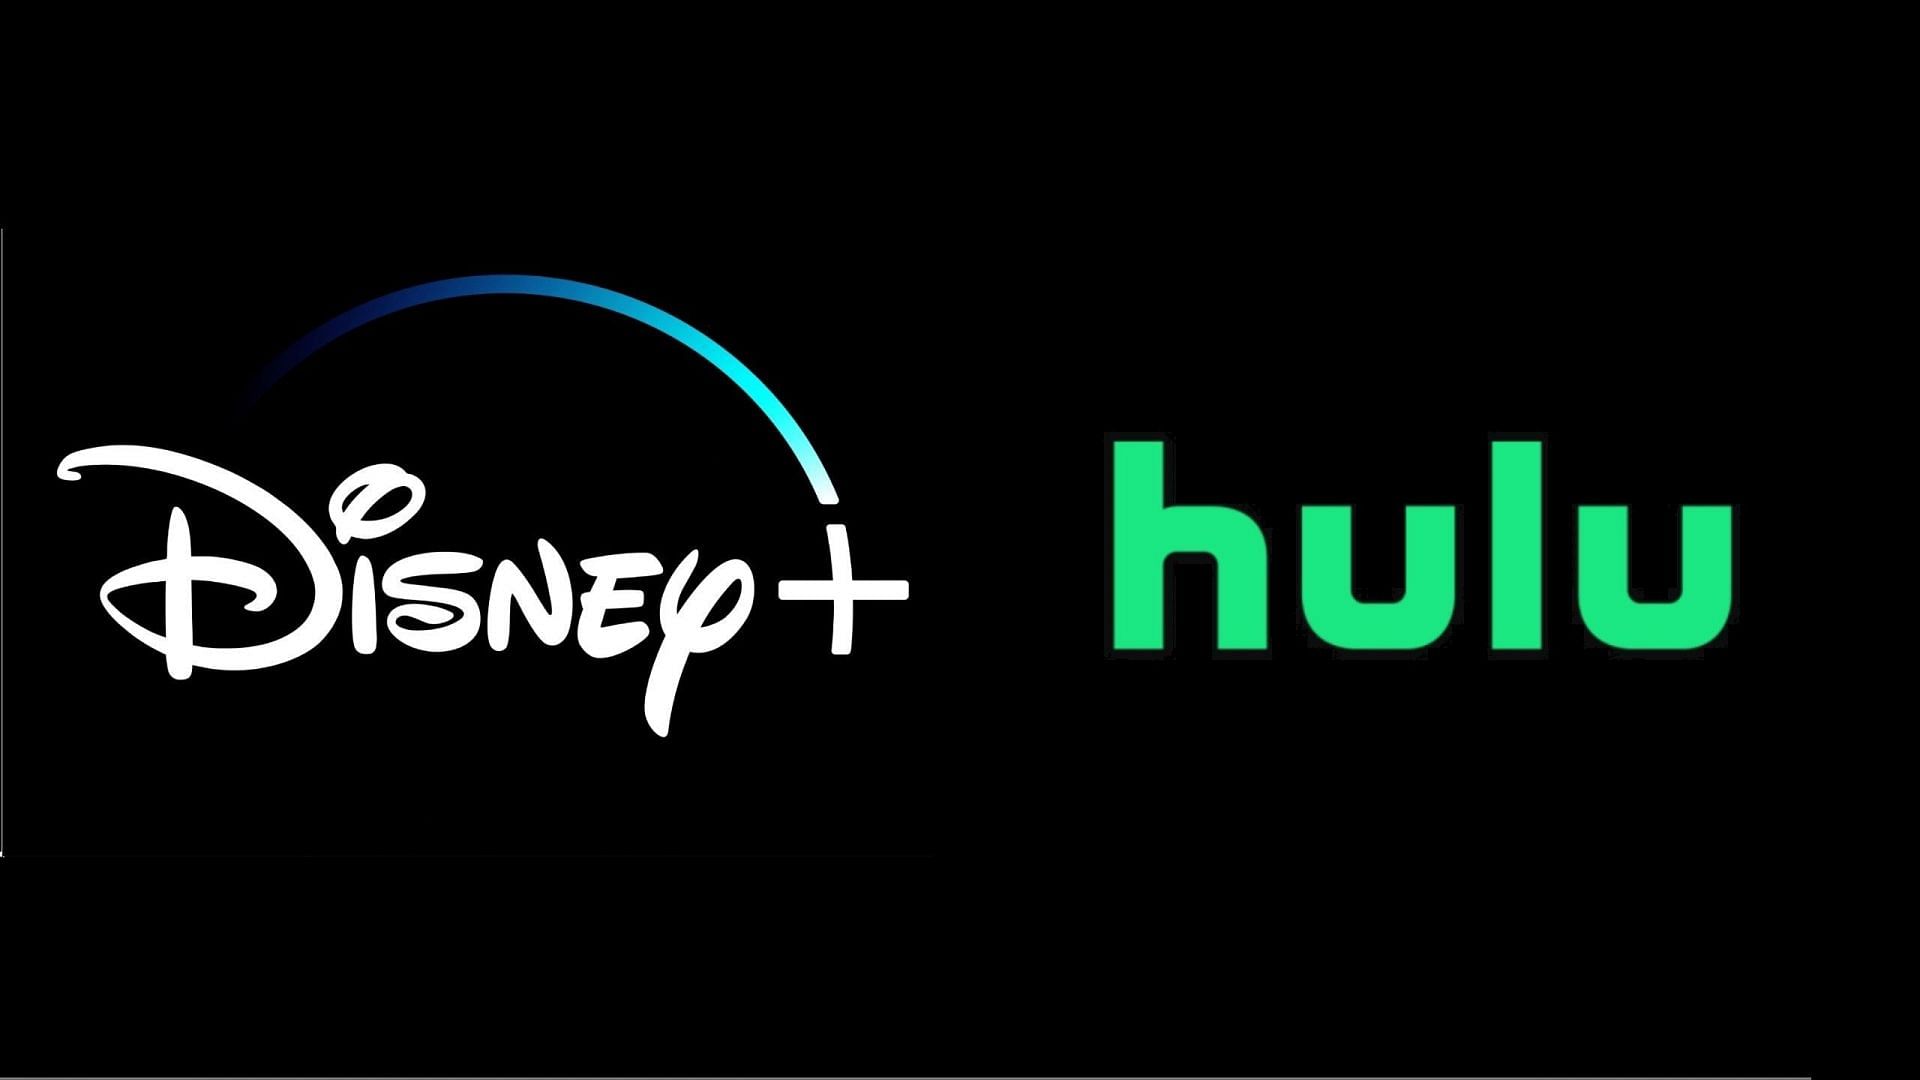 Hulu is majority owned by Disney (Image via Twitter)